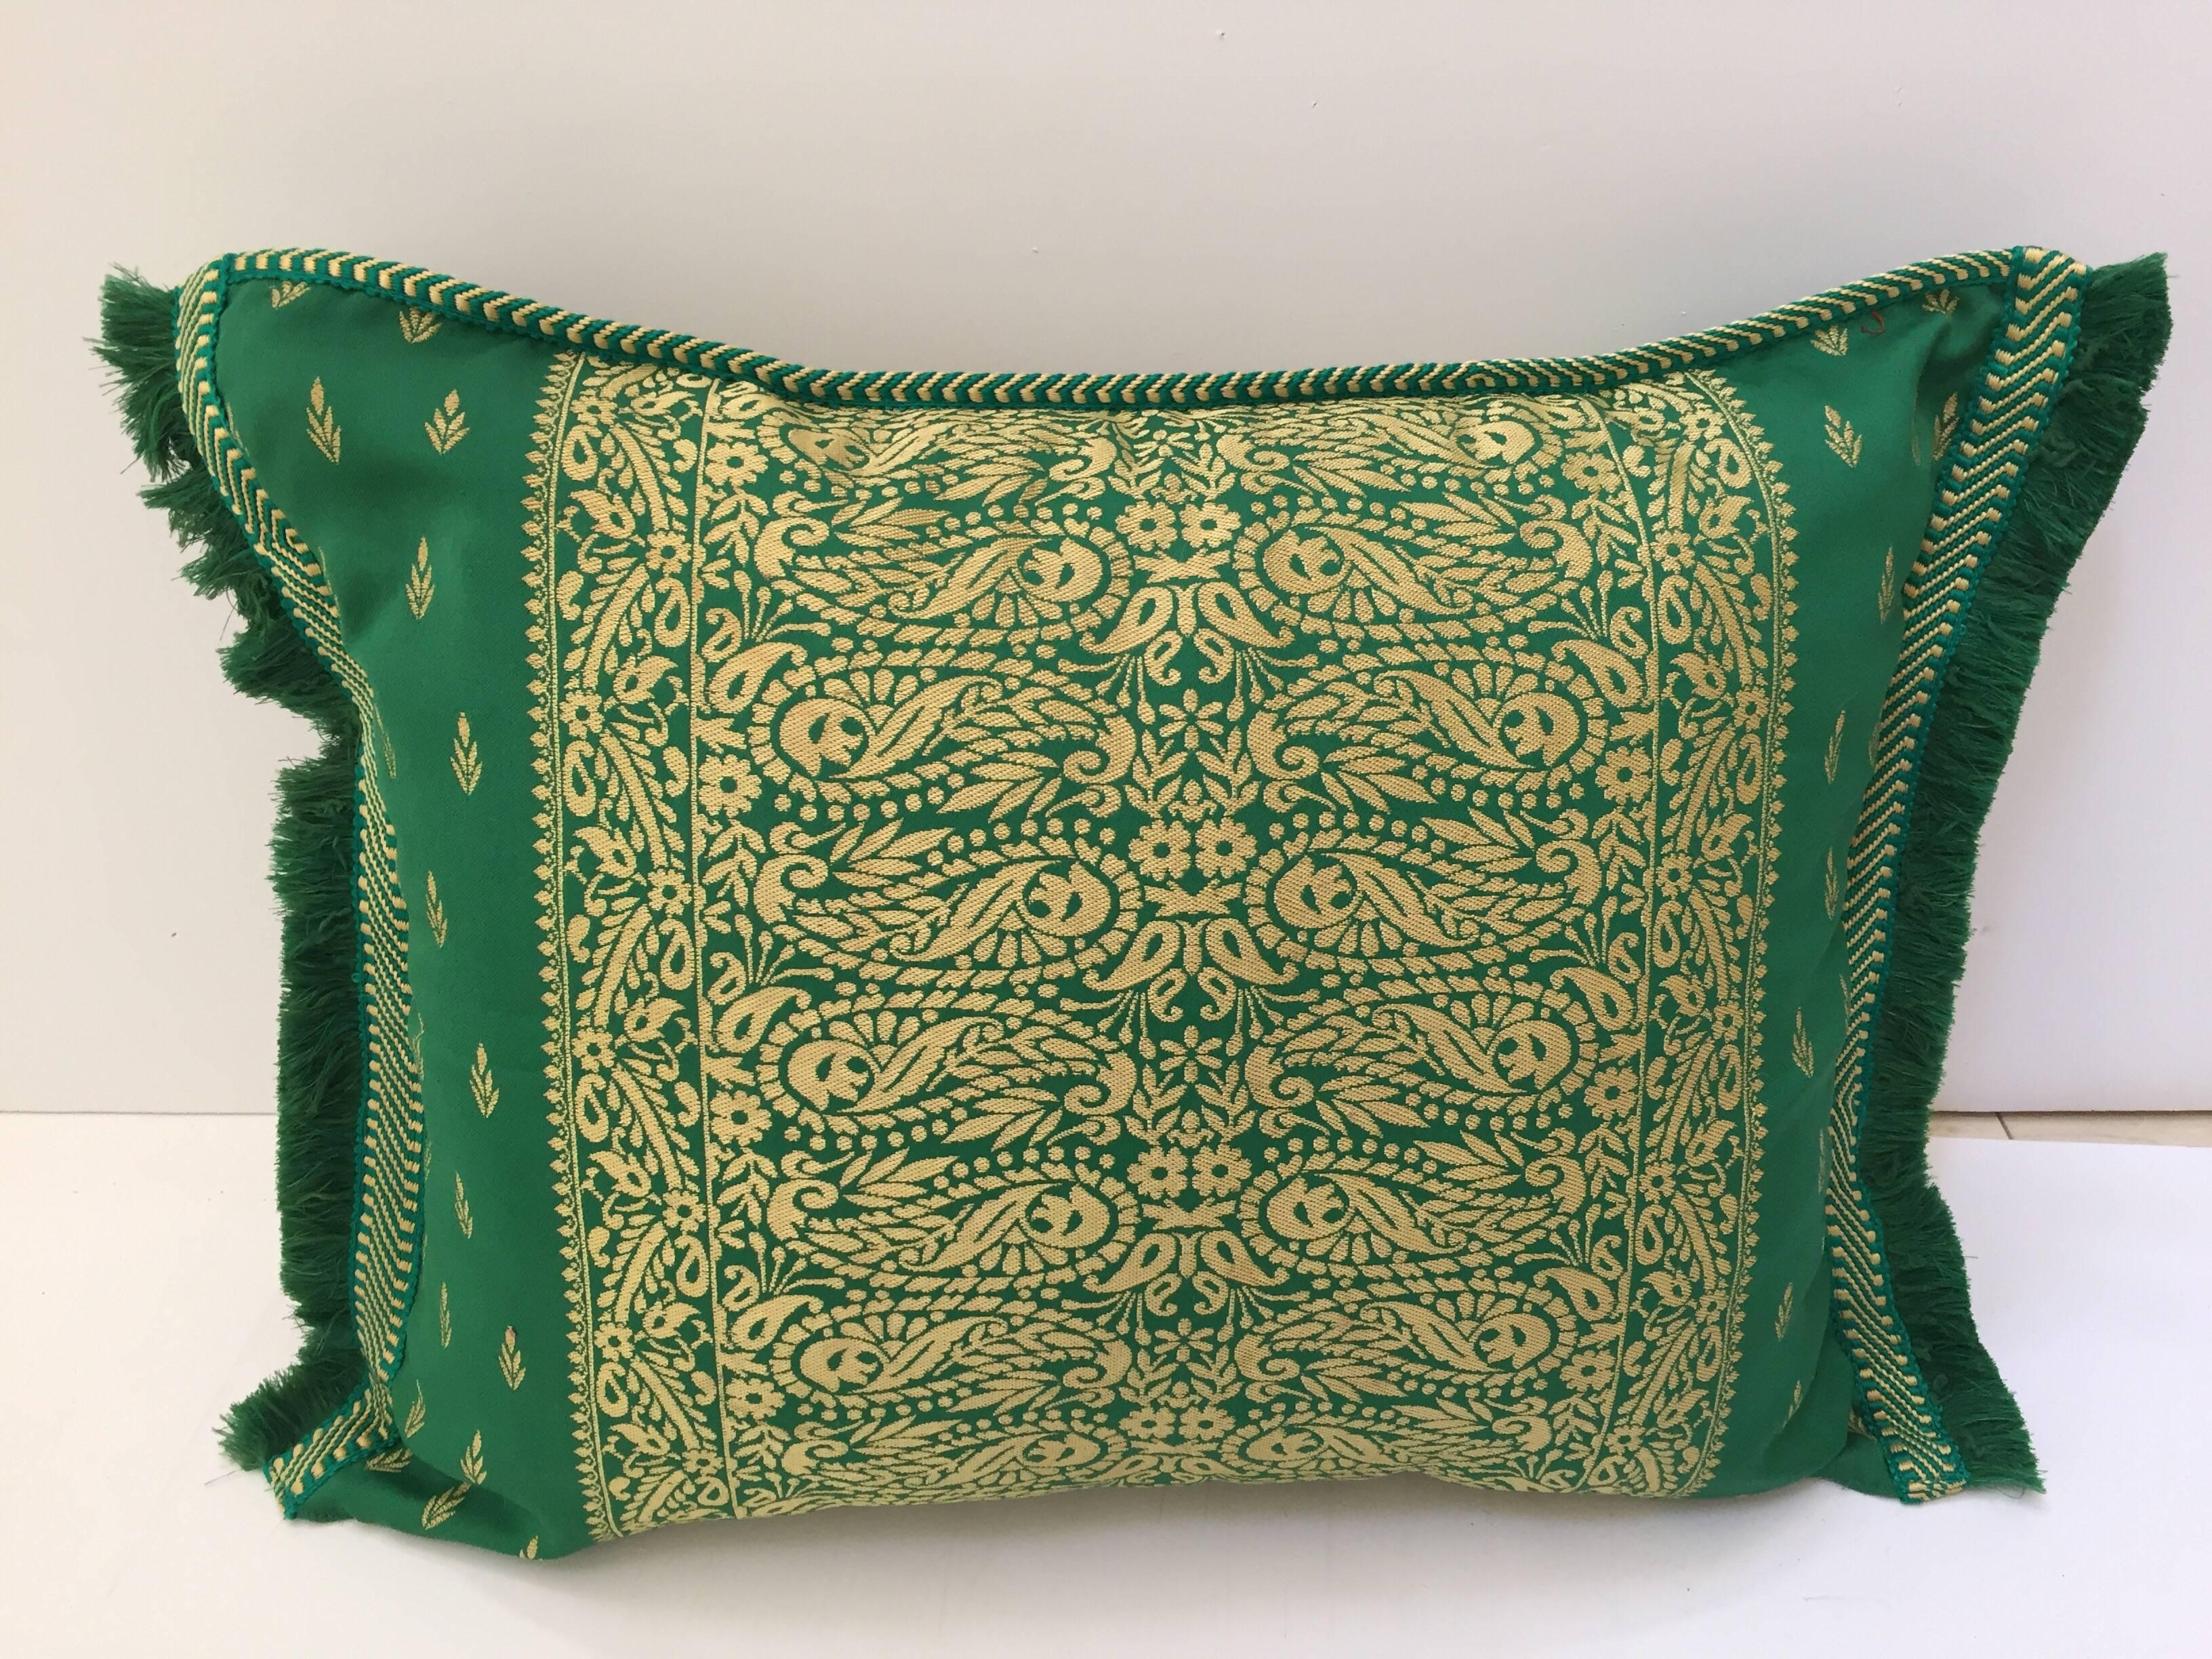 Grande paire de coussins décoratifs en damas marocain vert à motifs floraux.
Ils sont parfaits pour être utilisés comme coussins d'appoint sur un lit ou un canapé.
L'oreiller présente un magnifique médaillon central, des coins détaillés et des